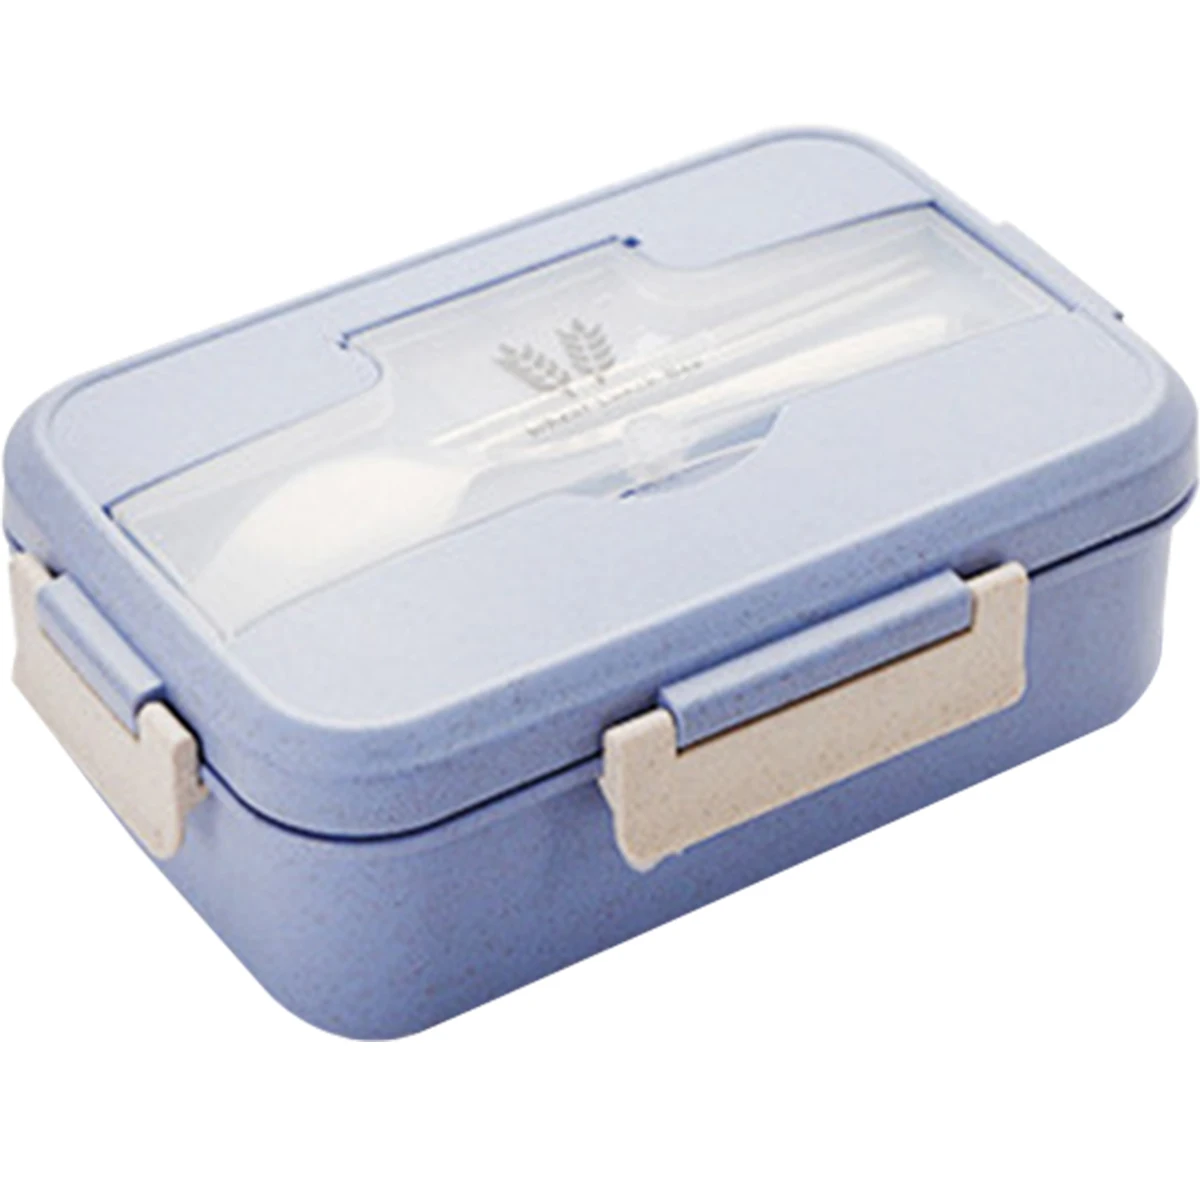 

Новый Ланч-бокс 1200 мл Bento с посудой, портативный контейнер для хранения пищи Bento с 3 отсеками, герметичный Ланч-бокс, многоразовый